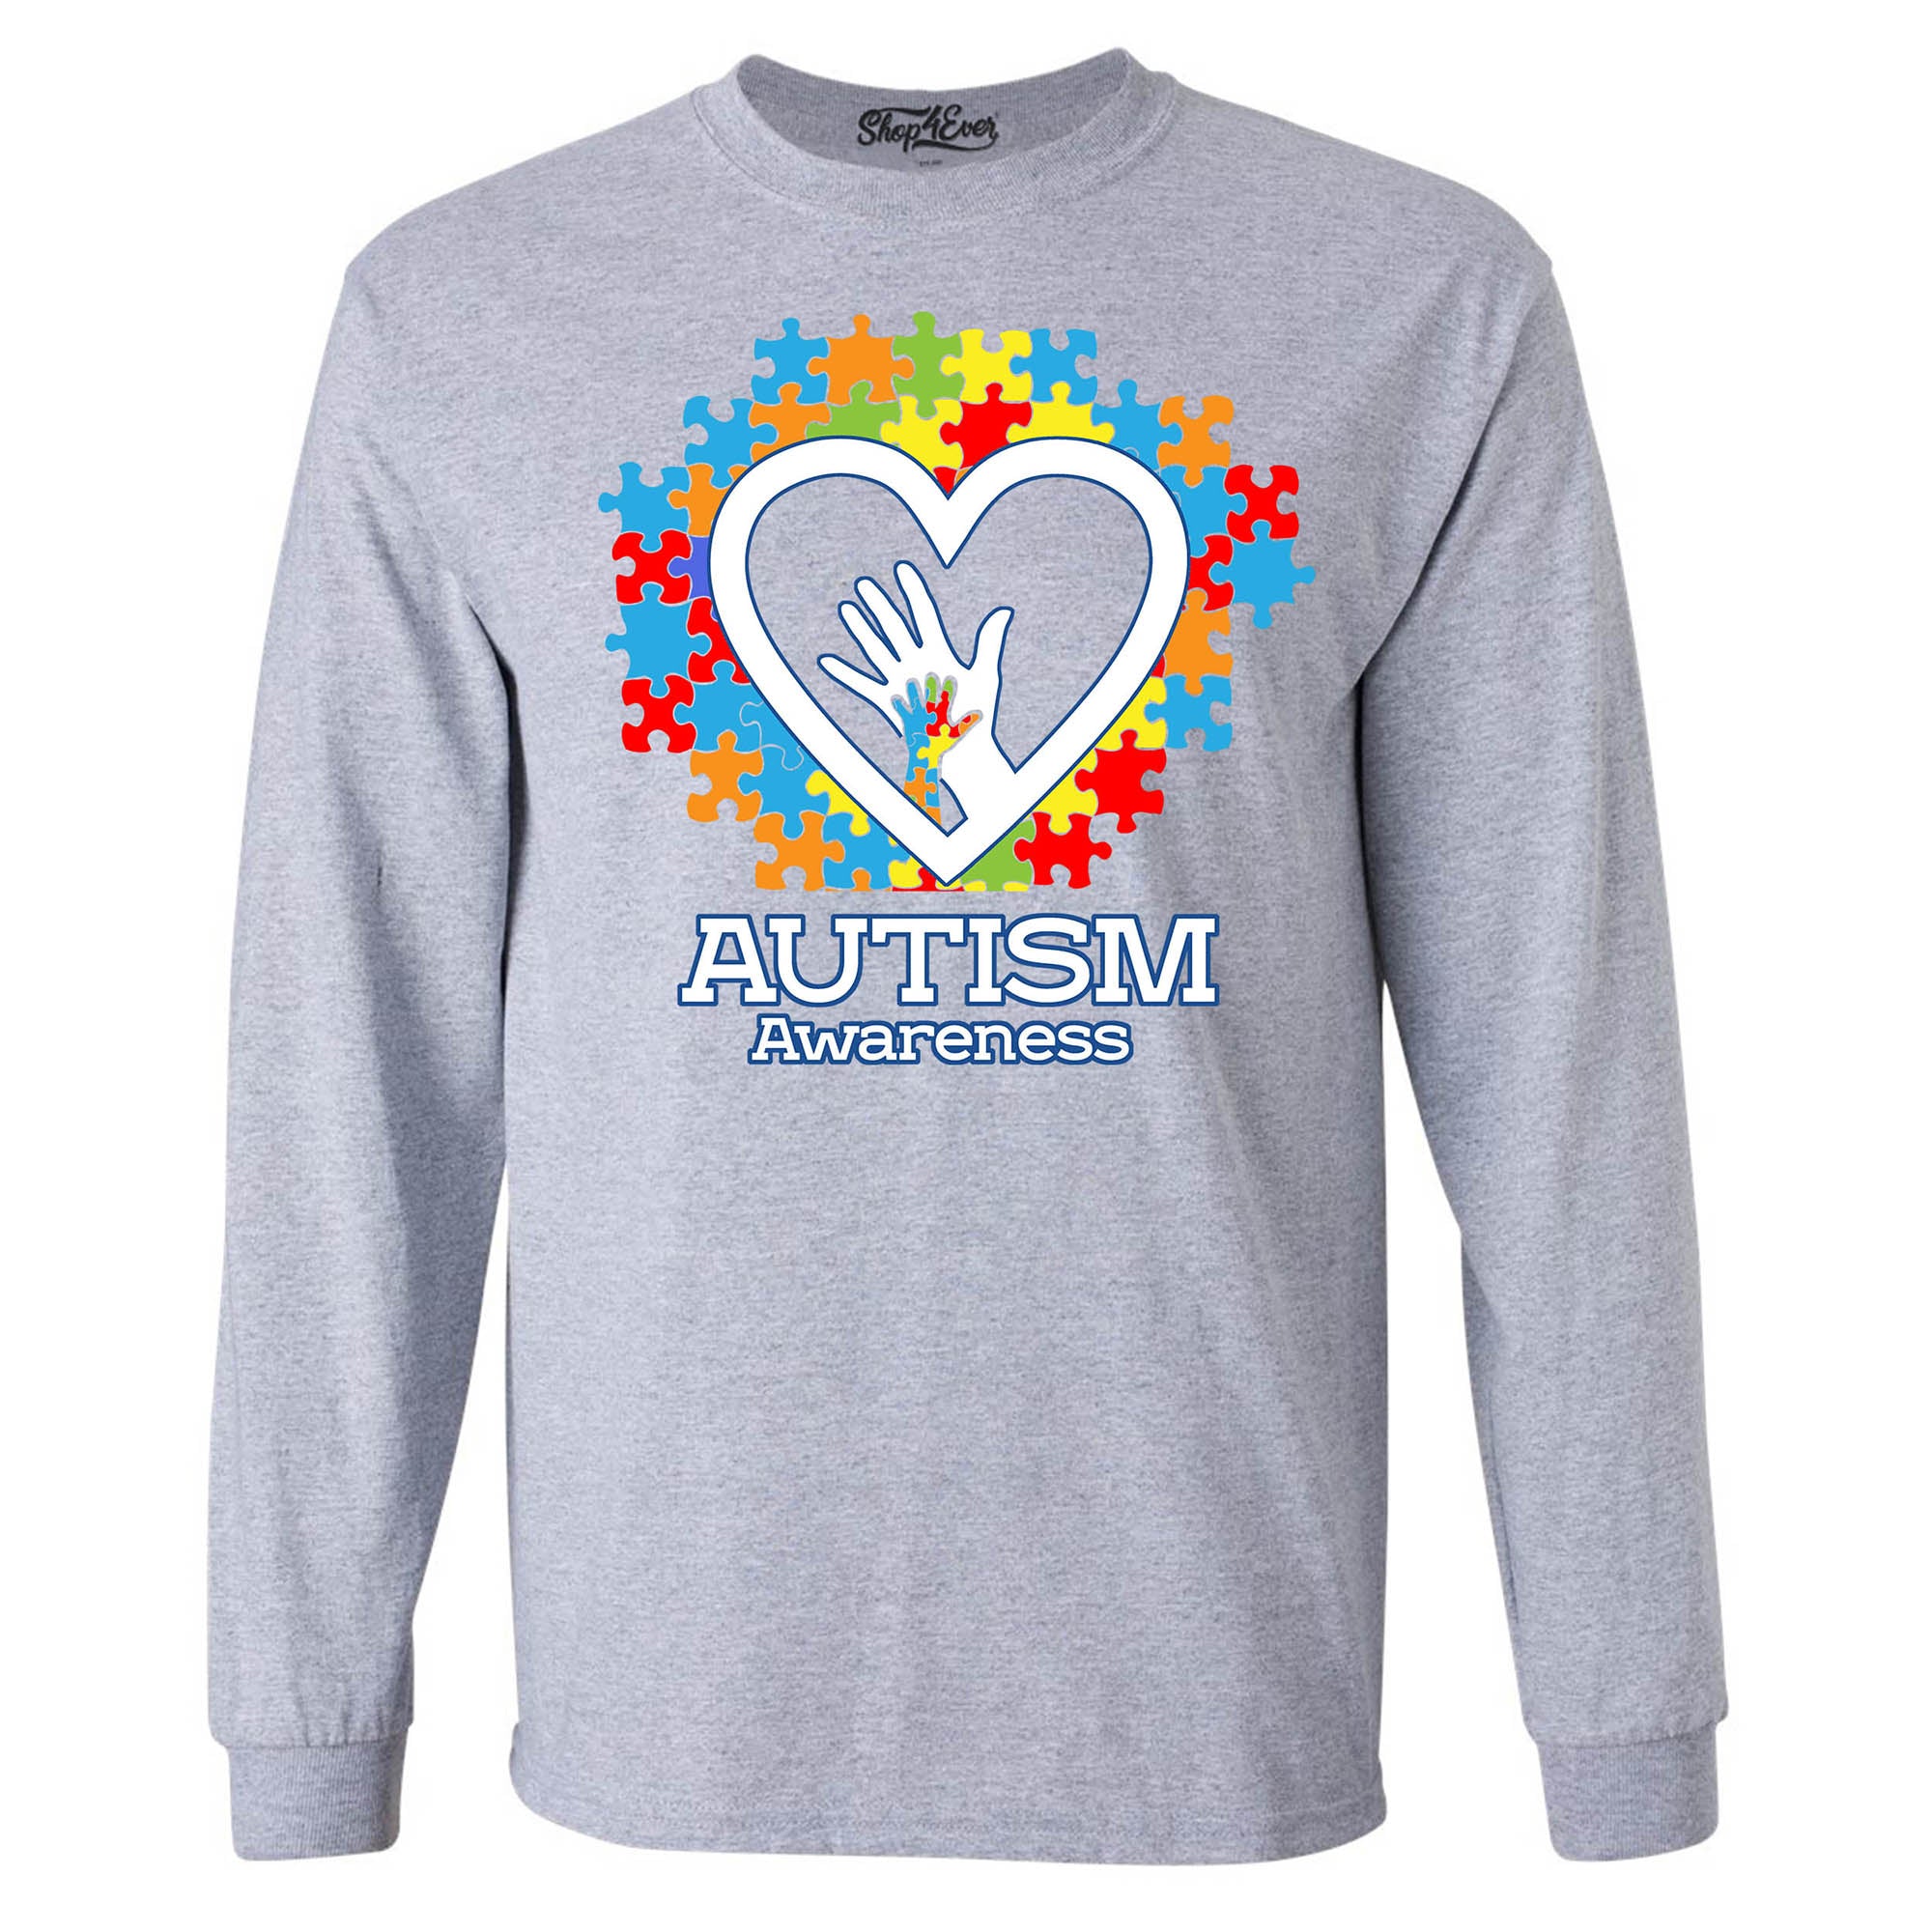 Autism Awareness Hands in Heart Men's Long Sleeve Shirt